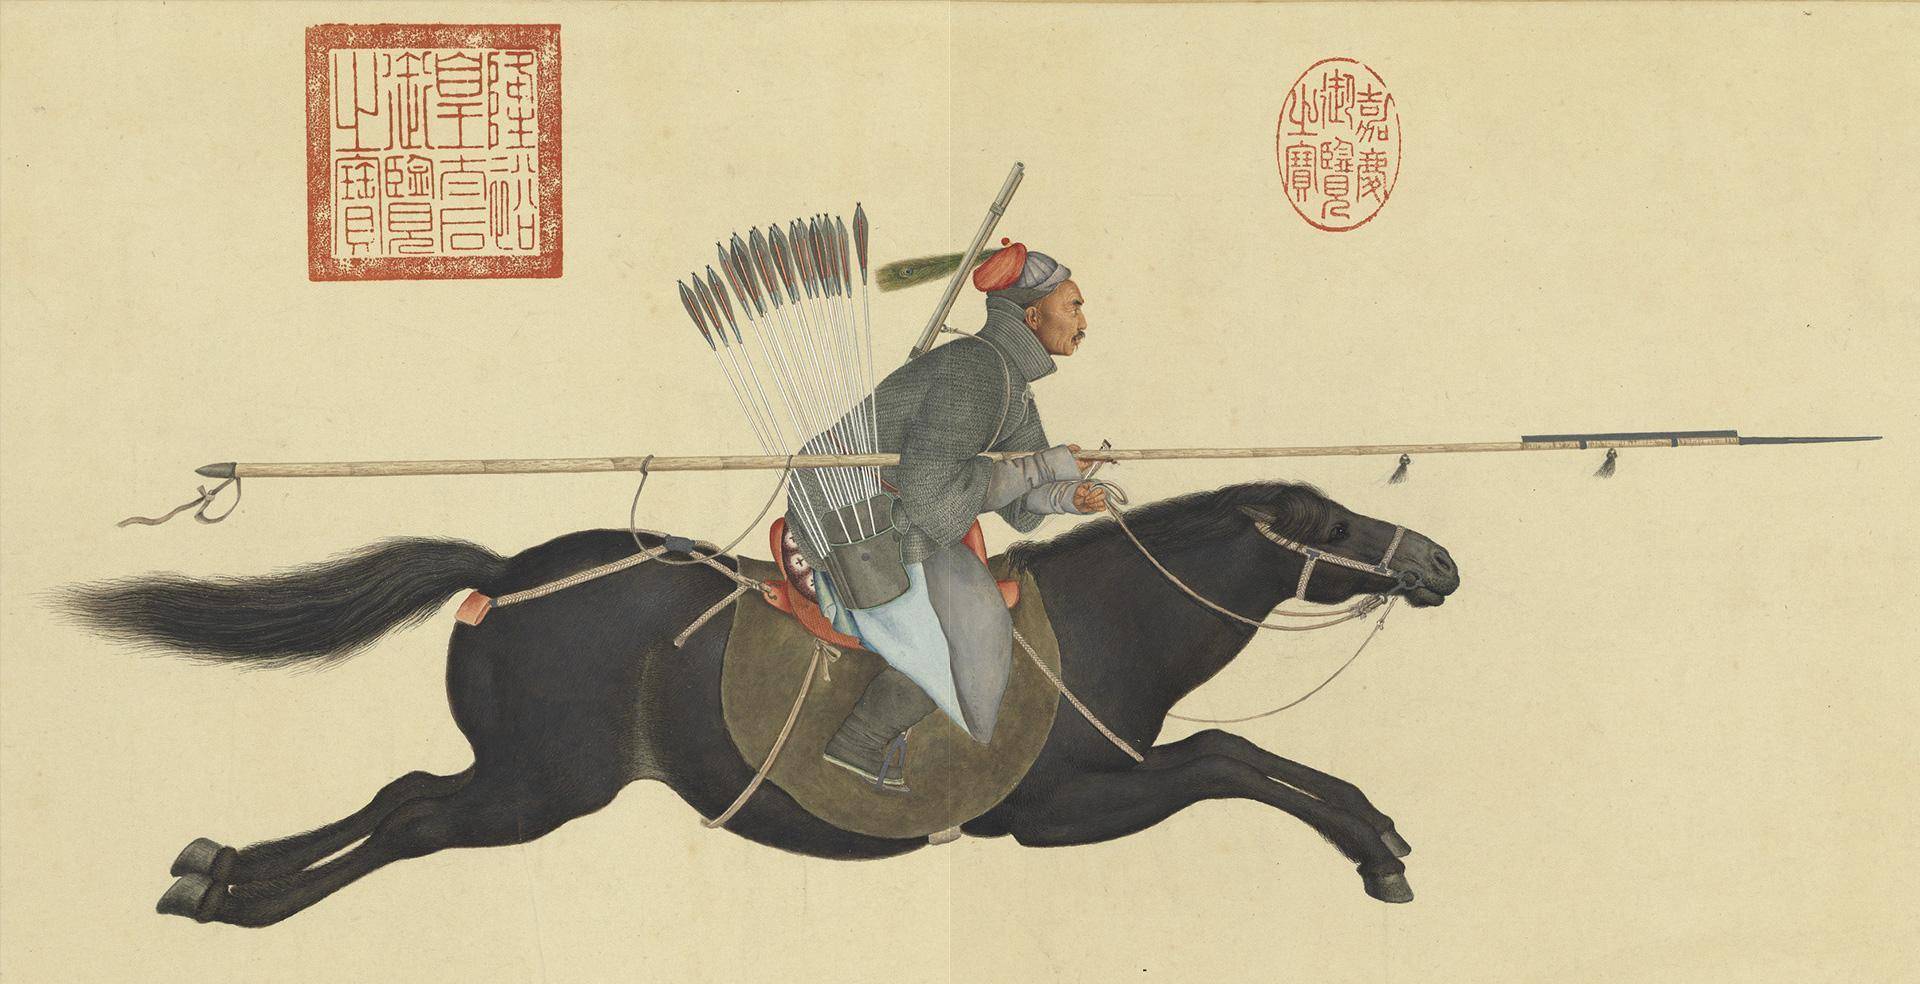 宫廷画师郎世宁所作,现藏于国立故宫博物院,图中显示阿玉锡兼具枪骑兵